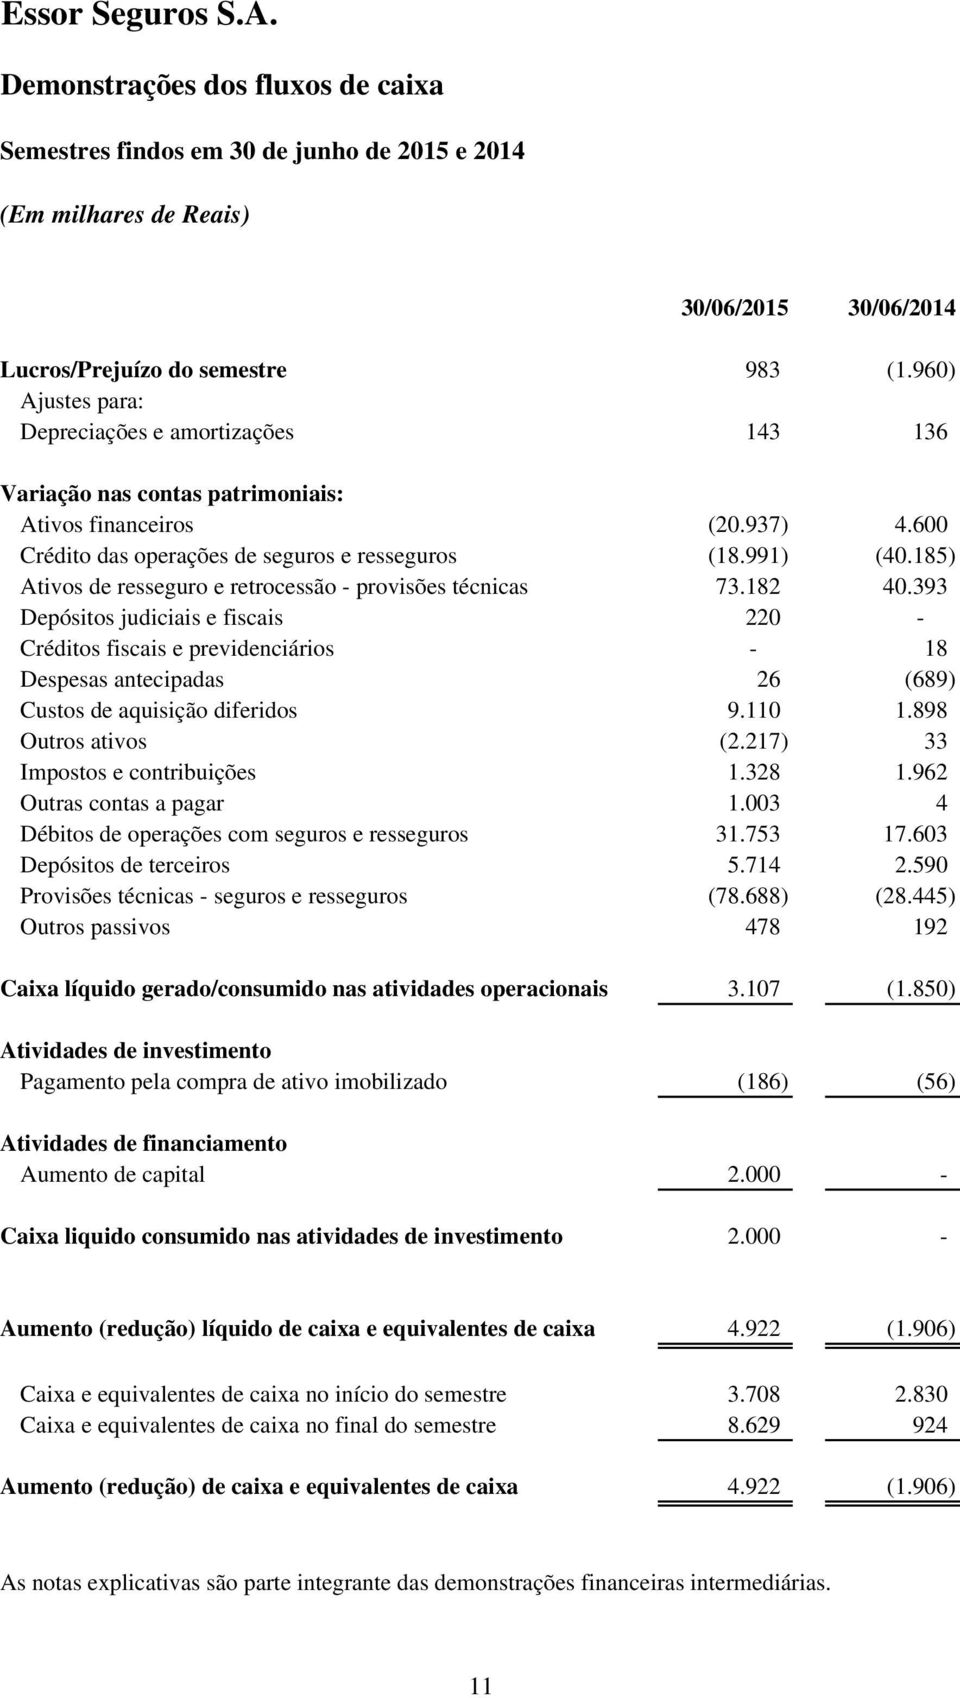 185) Ativos de resseguro e retrocessão - provisões técnicas 73.182 40.